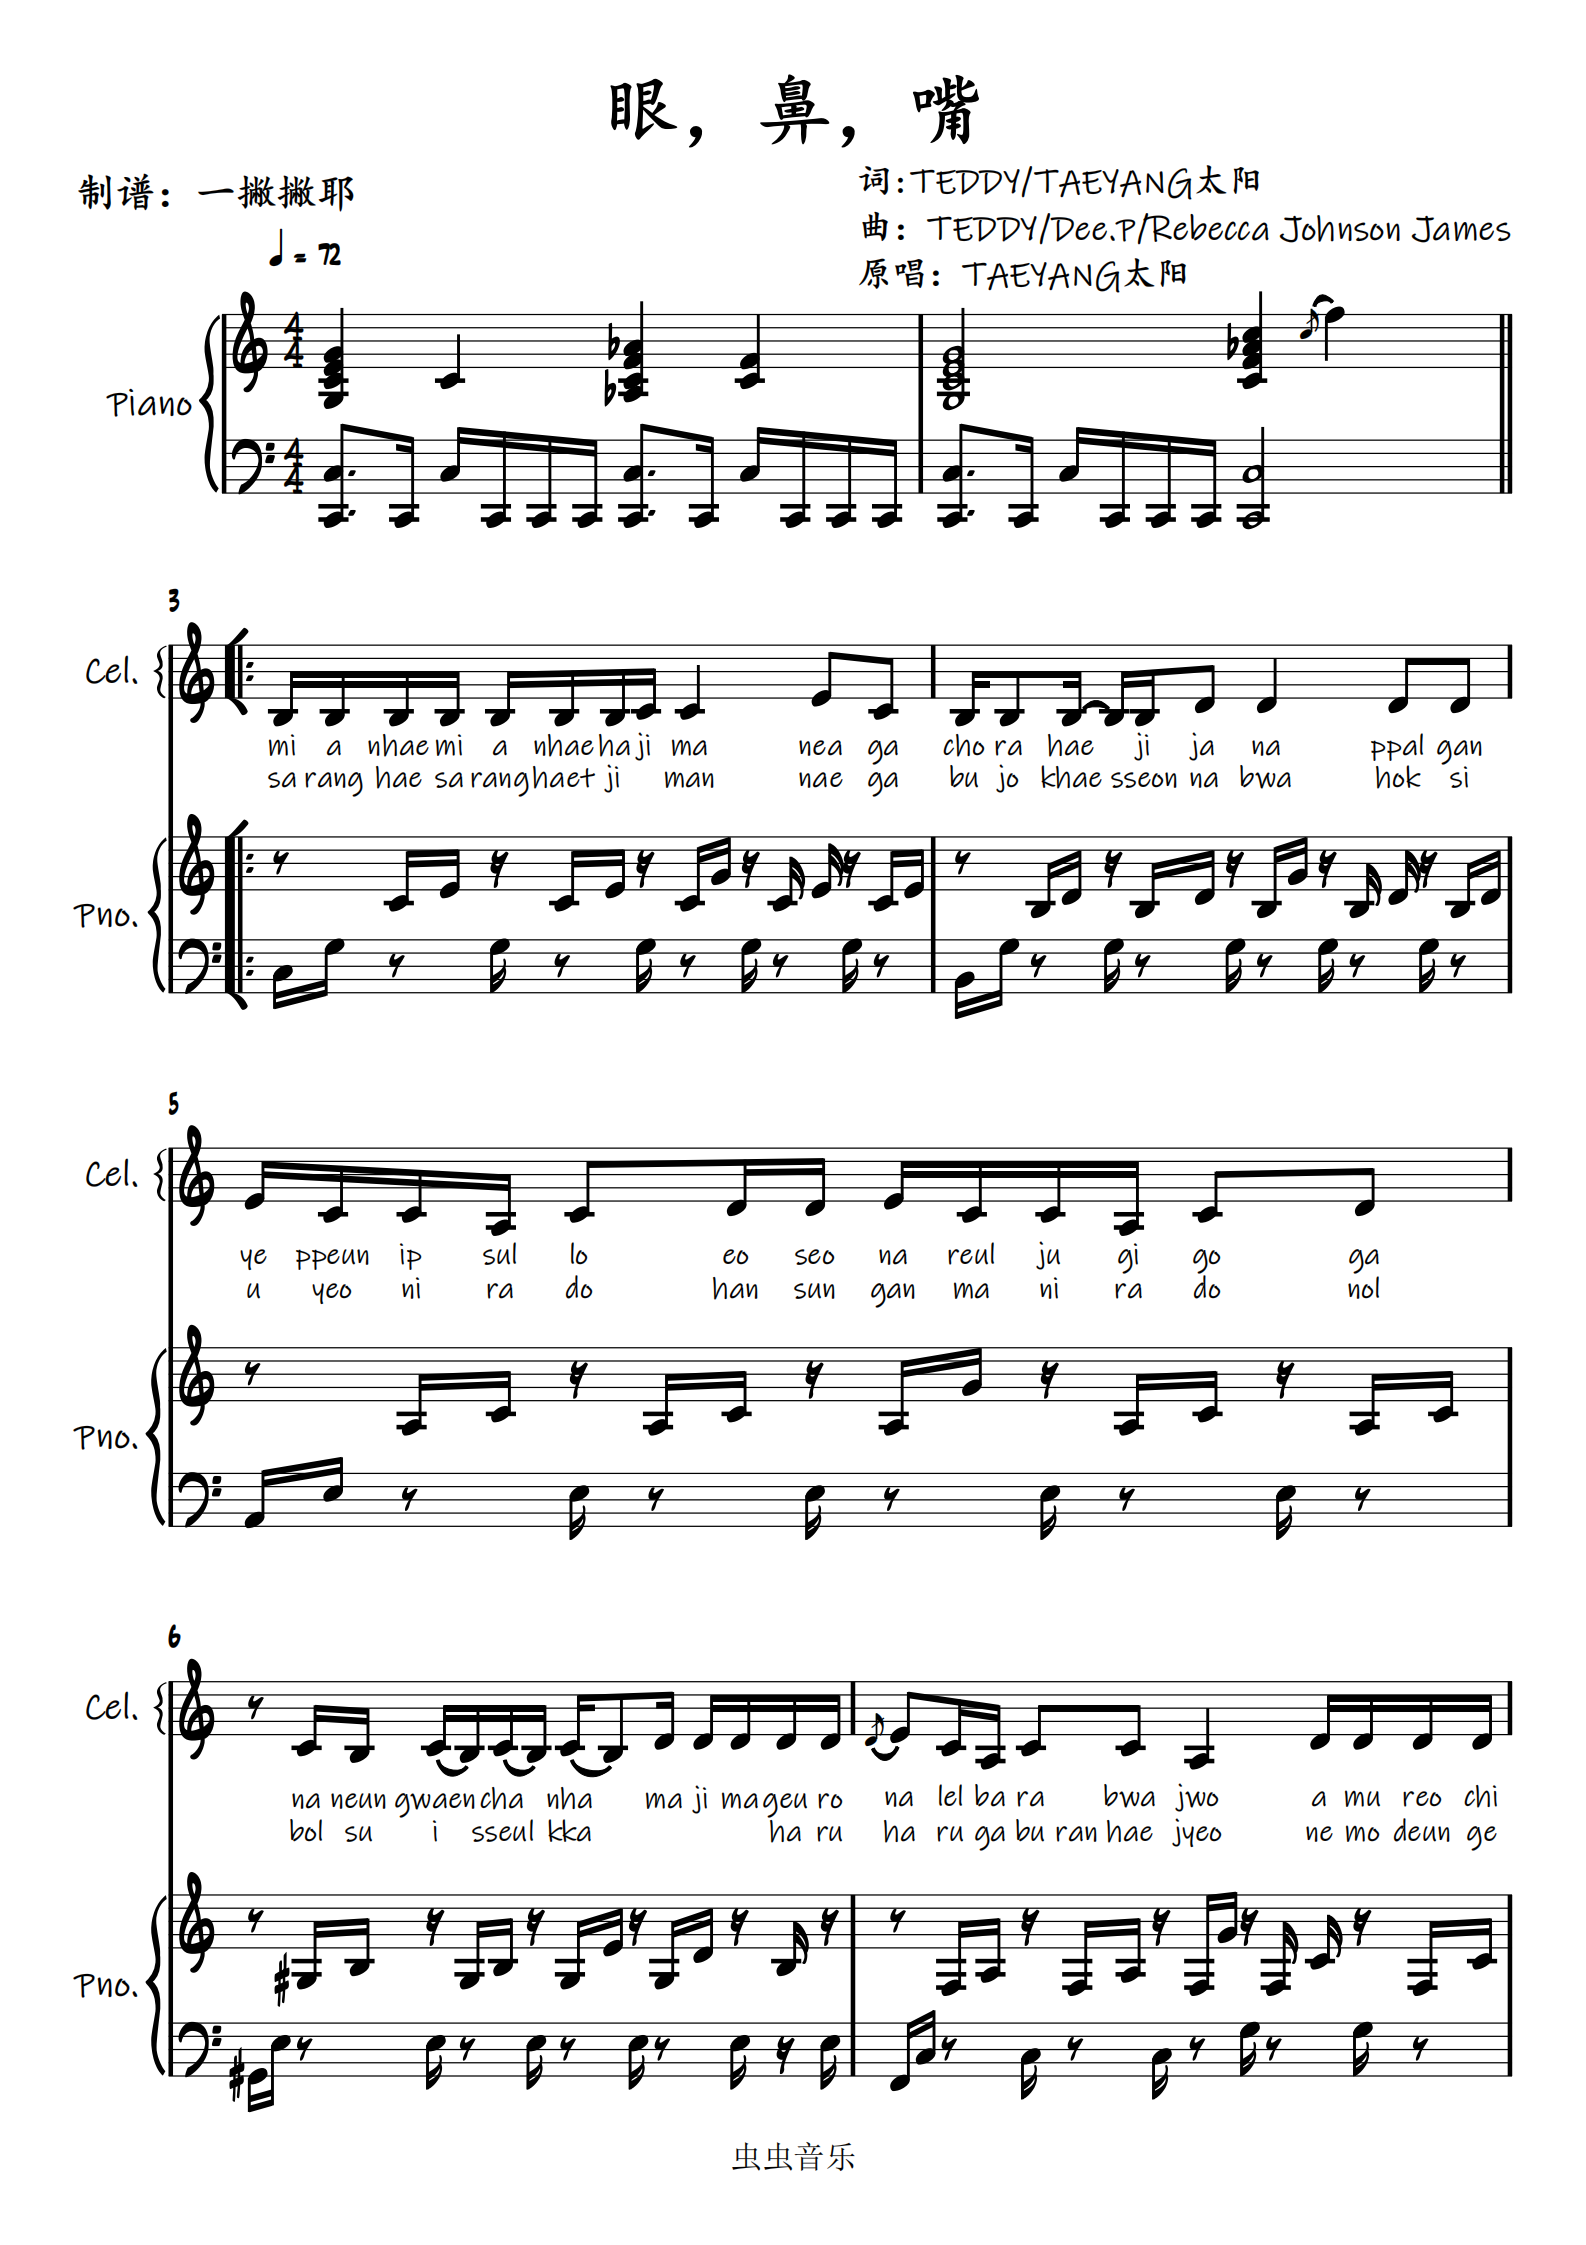 眼鼻嘴-太阳 Taeyang五线谱预览4-钢琴谱文件（五线谱、双手简谱、数字谱、Midi、PDF）免费下载